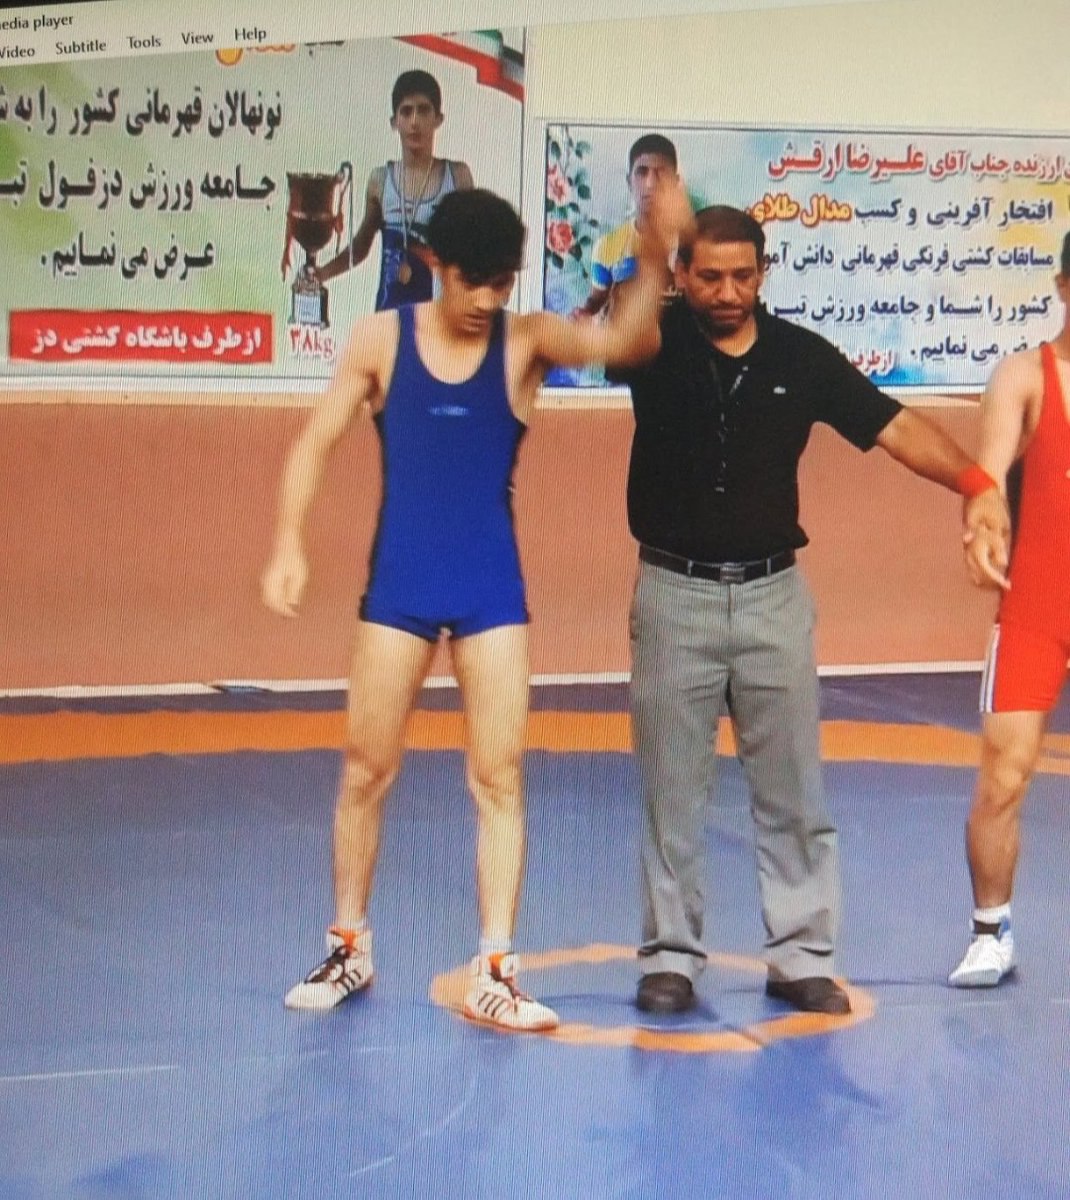 کلاس درس یک خارجیِ رِند برای پسربچه عجول ایرانی